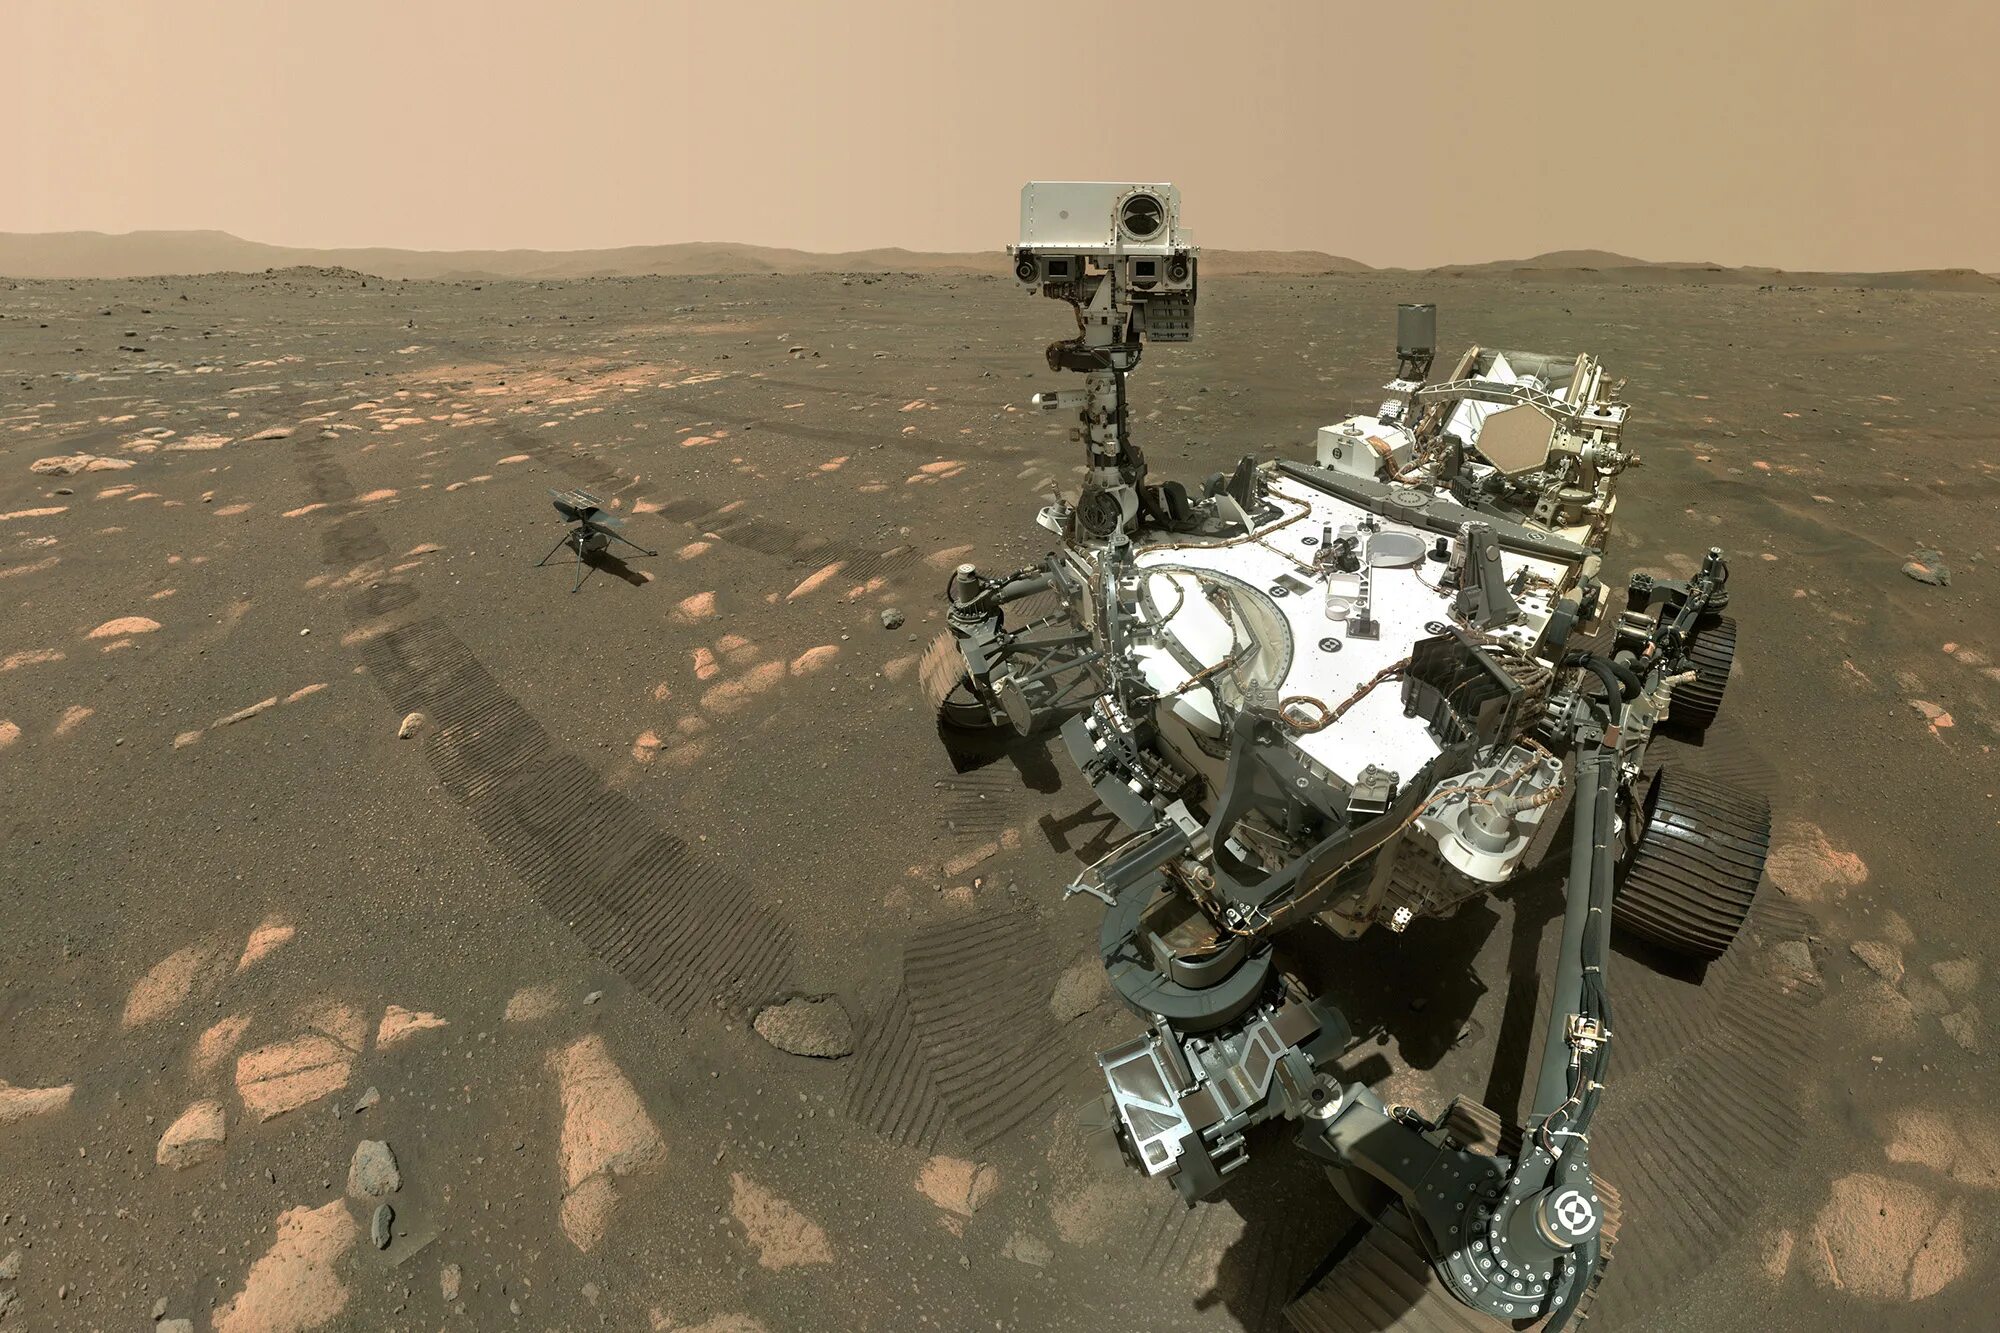 Марсианский зонд. Марсоход 2020 perseverance. Марсоход Mars 2020 Rover. Снимки Марса НАСА 2021. Снимки планеты Марс с марсохода.